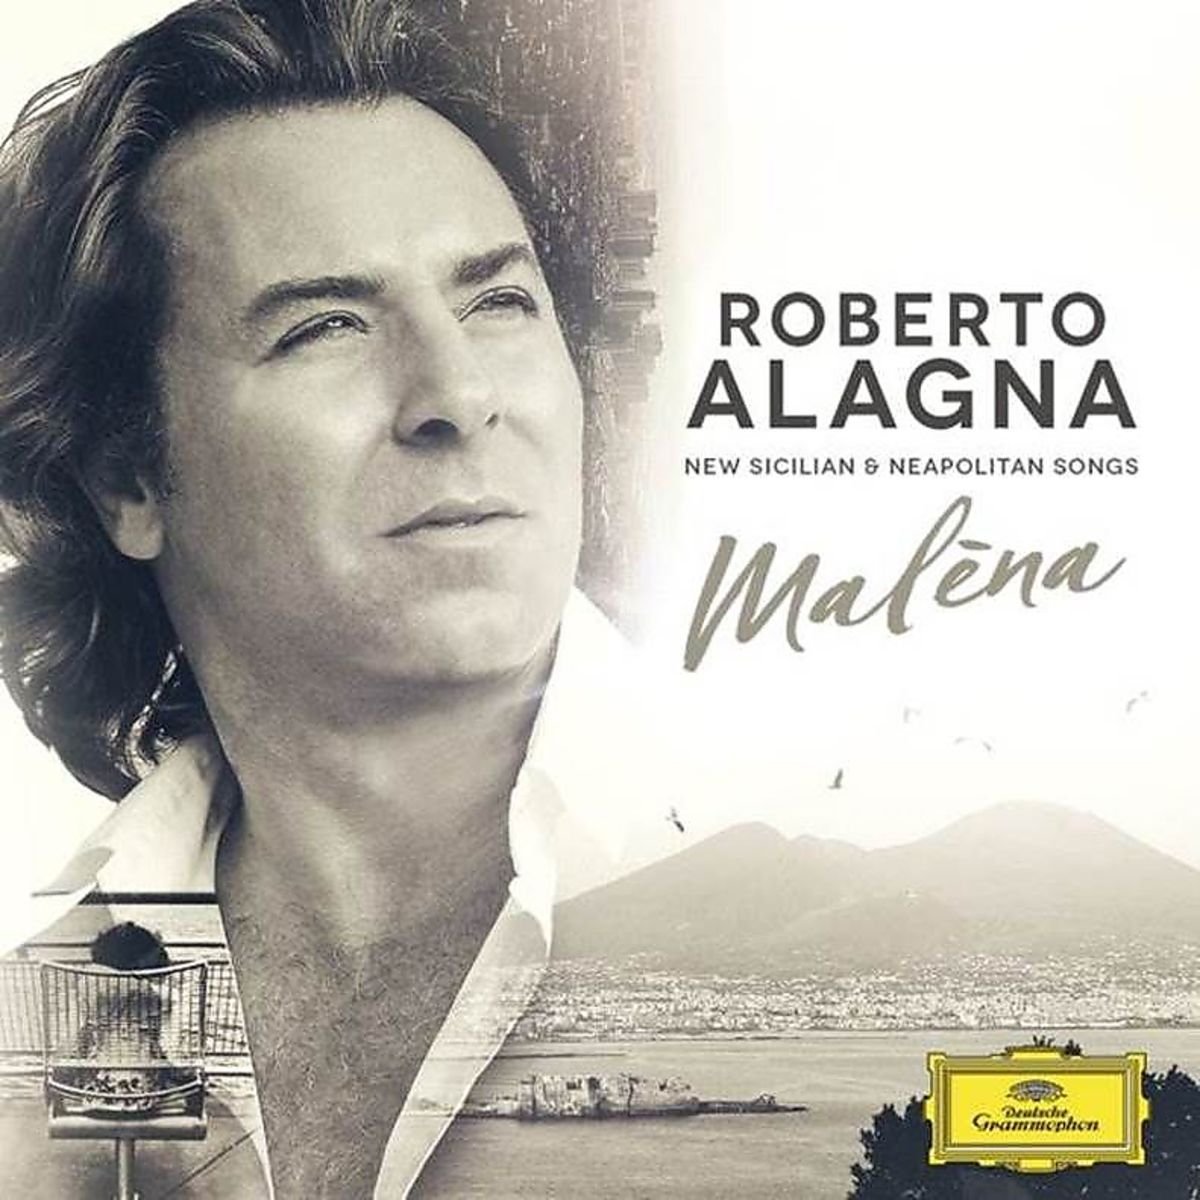 Roberto Alagna – Malena (2016) [HDTracks FLAC 24bit/96kHz]